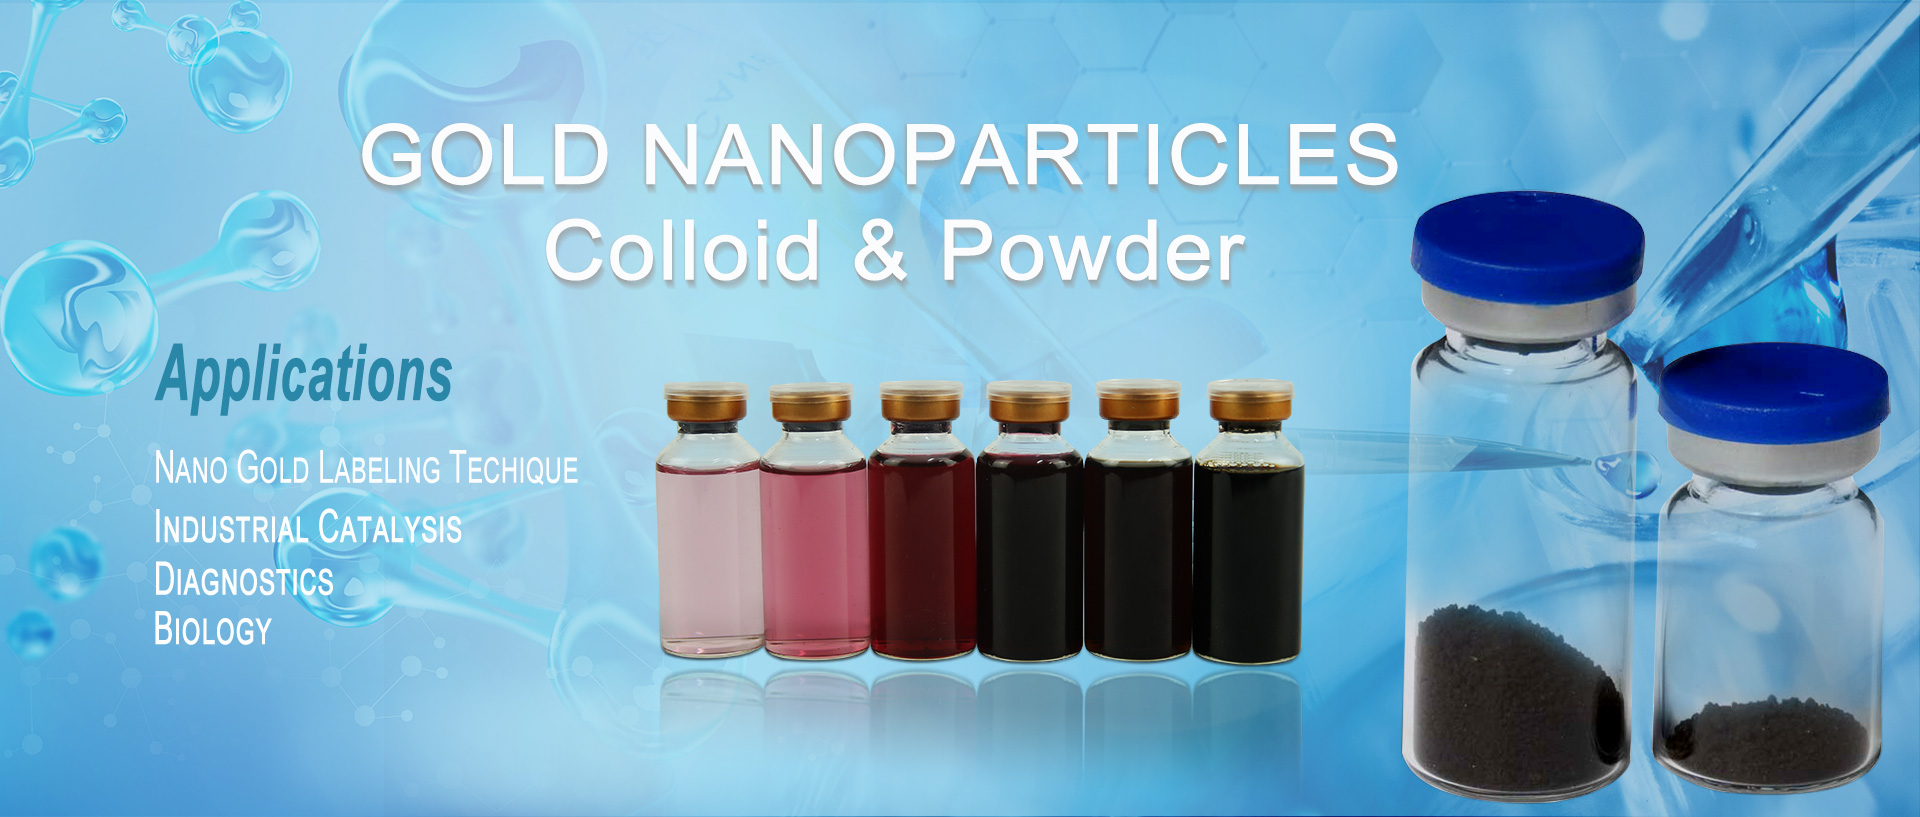 kub nanoparticles